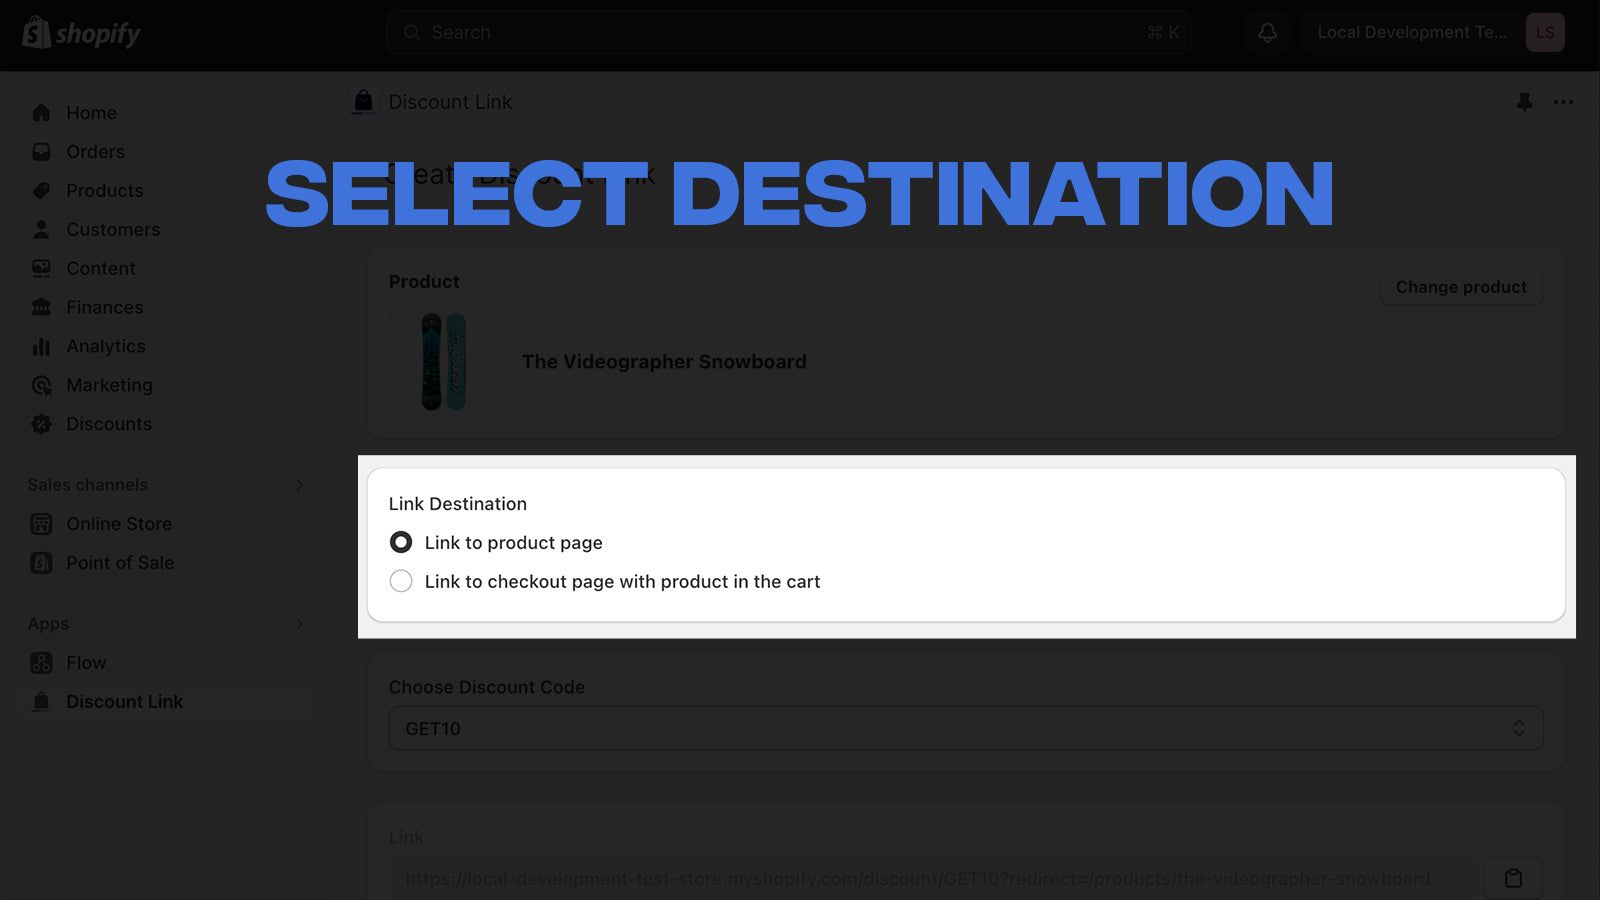 Select Destination